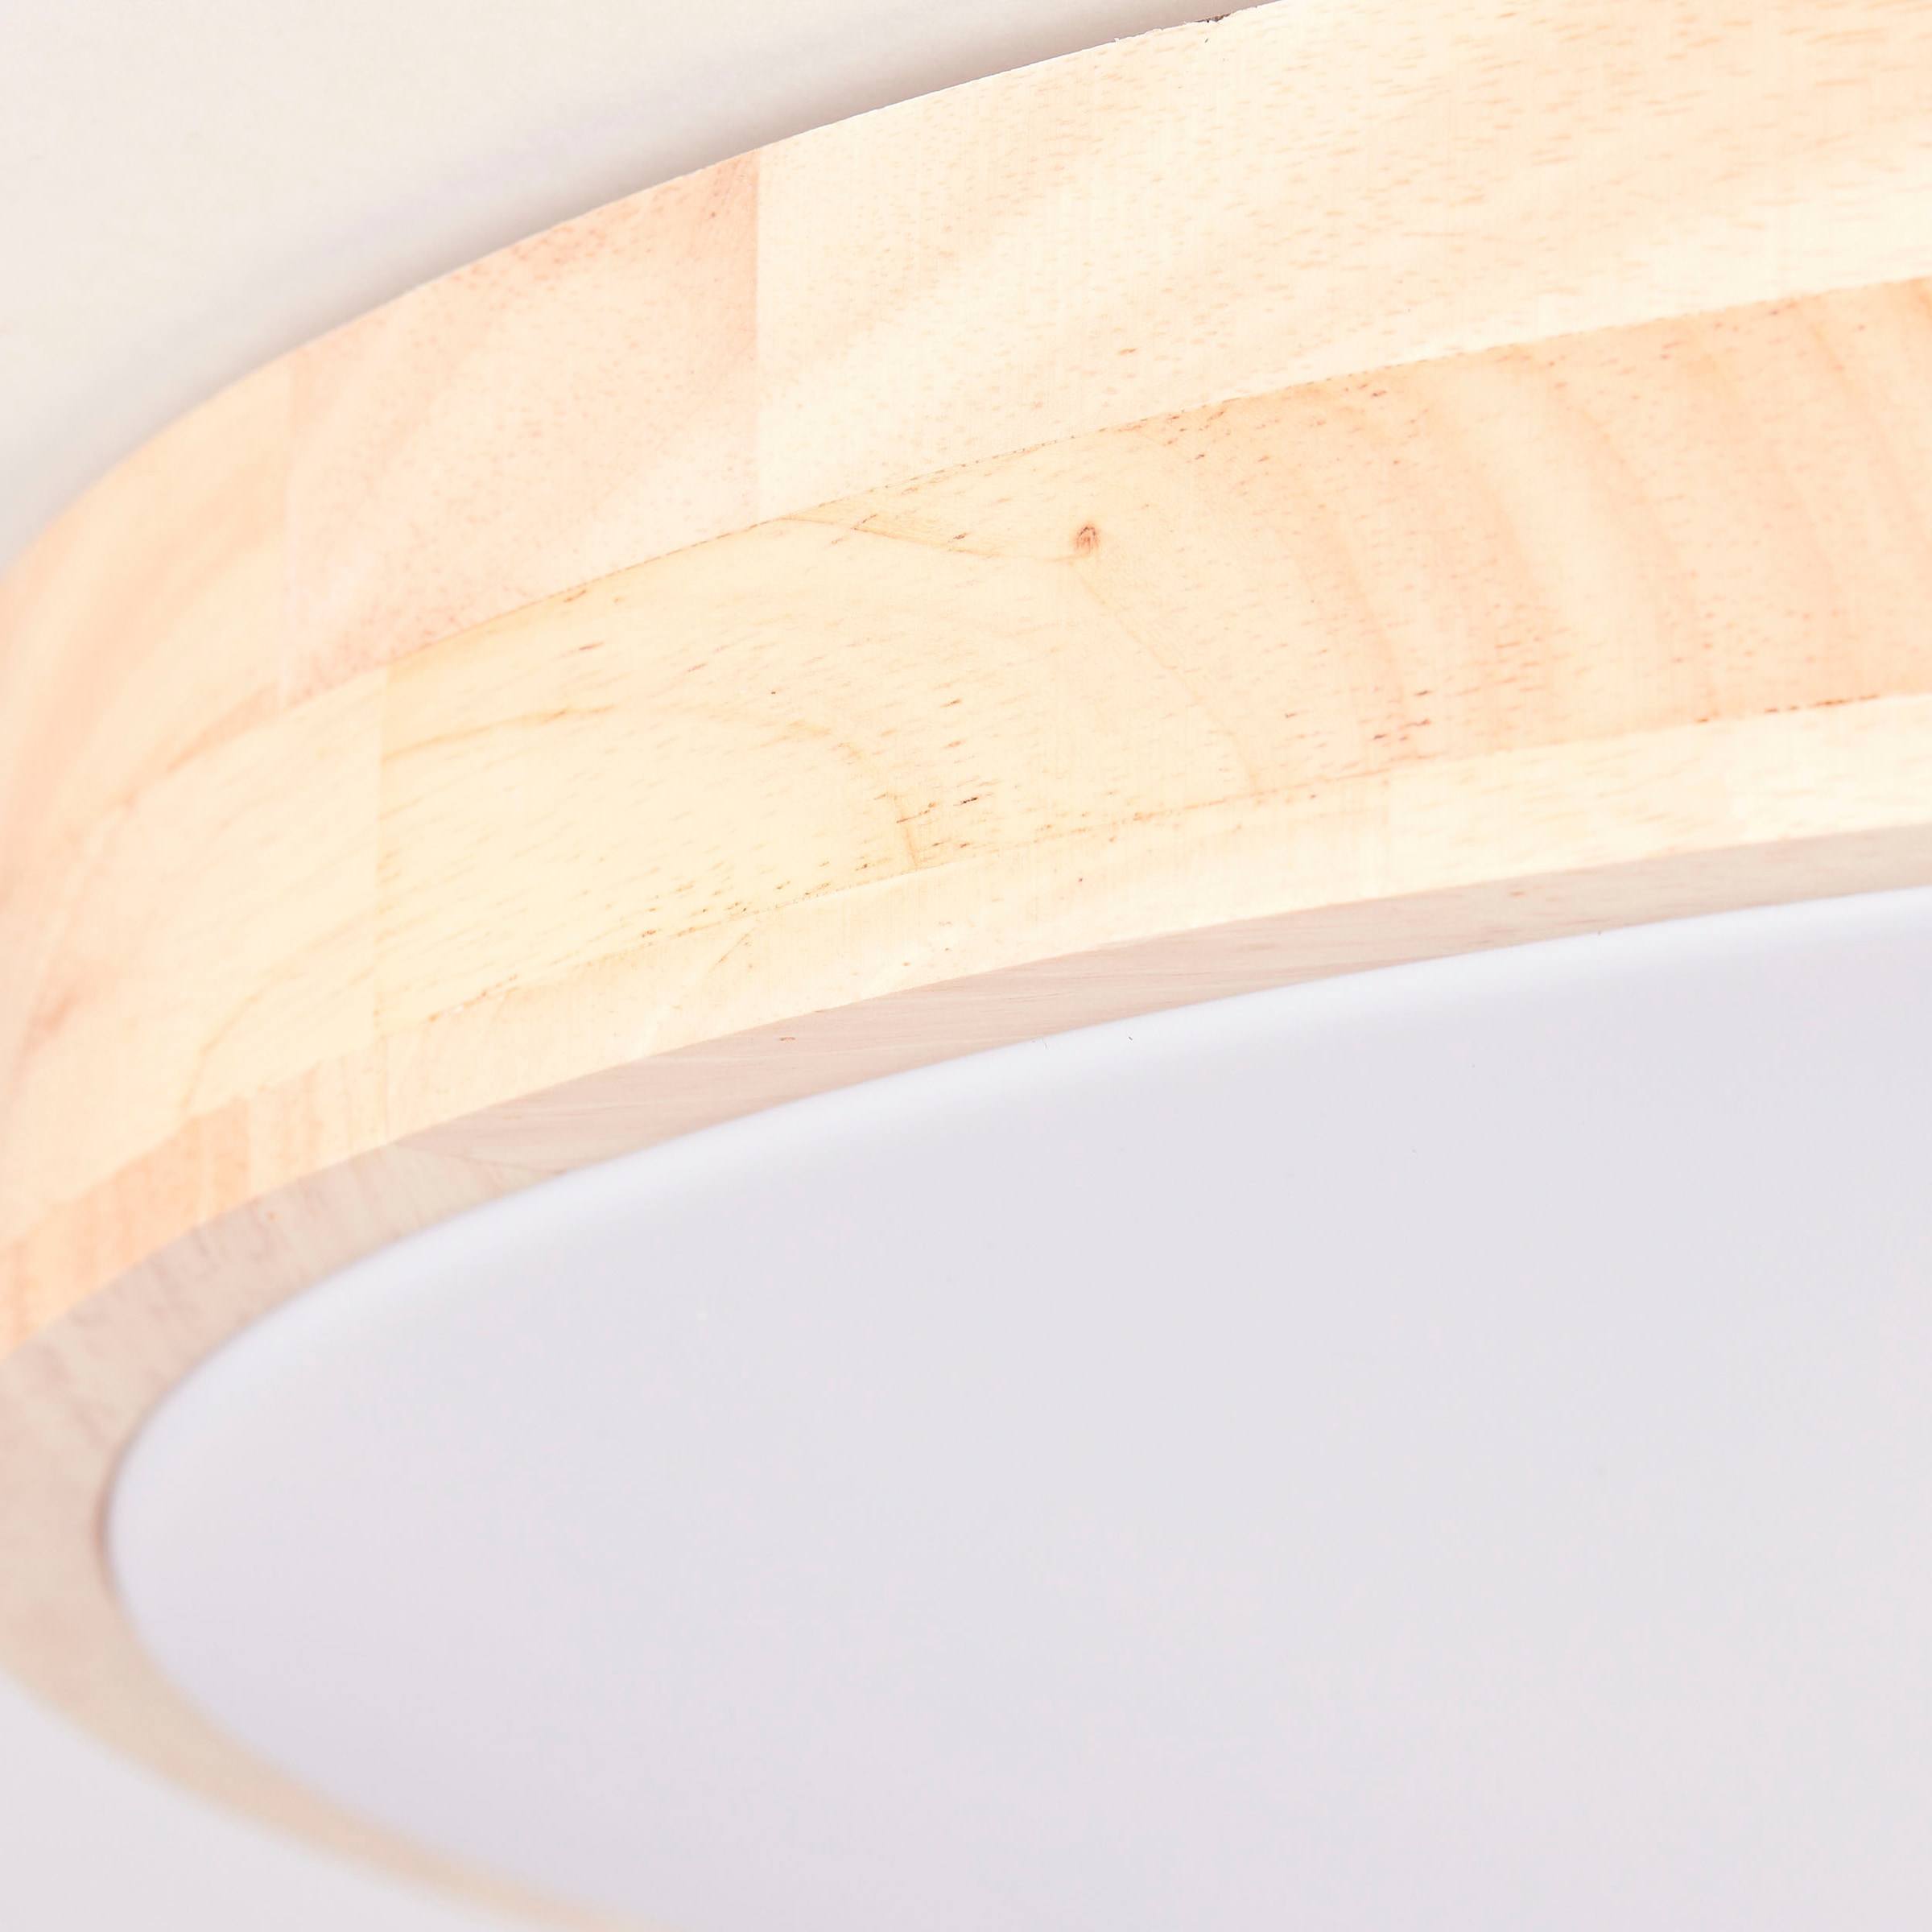 BreLight LED Wandleuchte »Slimline«, D 50 cm, 3800 lm, 3000-6500 K, CCT,  dimmbar, Holz hell/weiß | BAUR